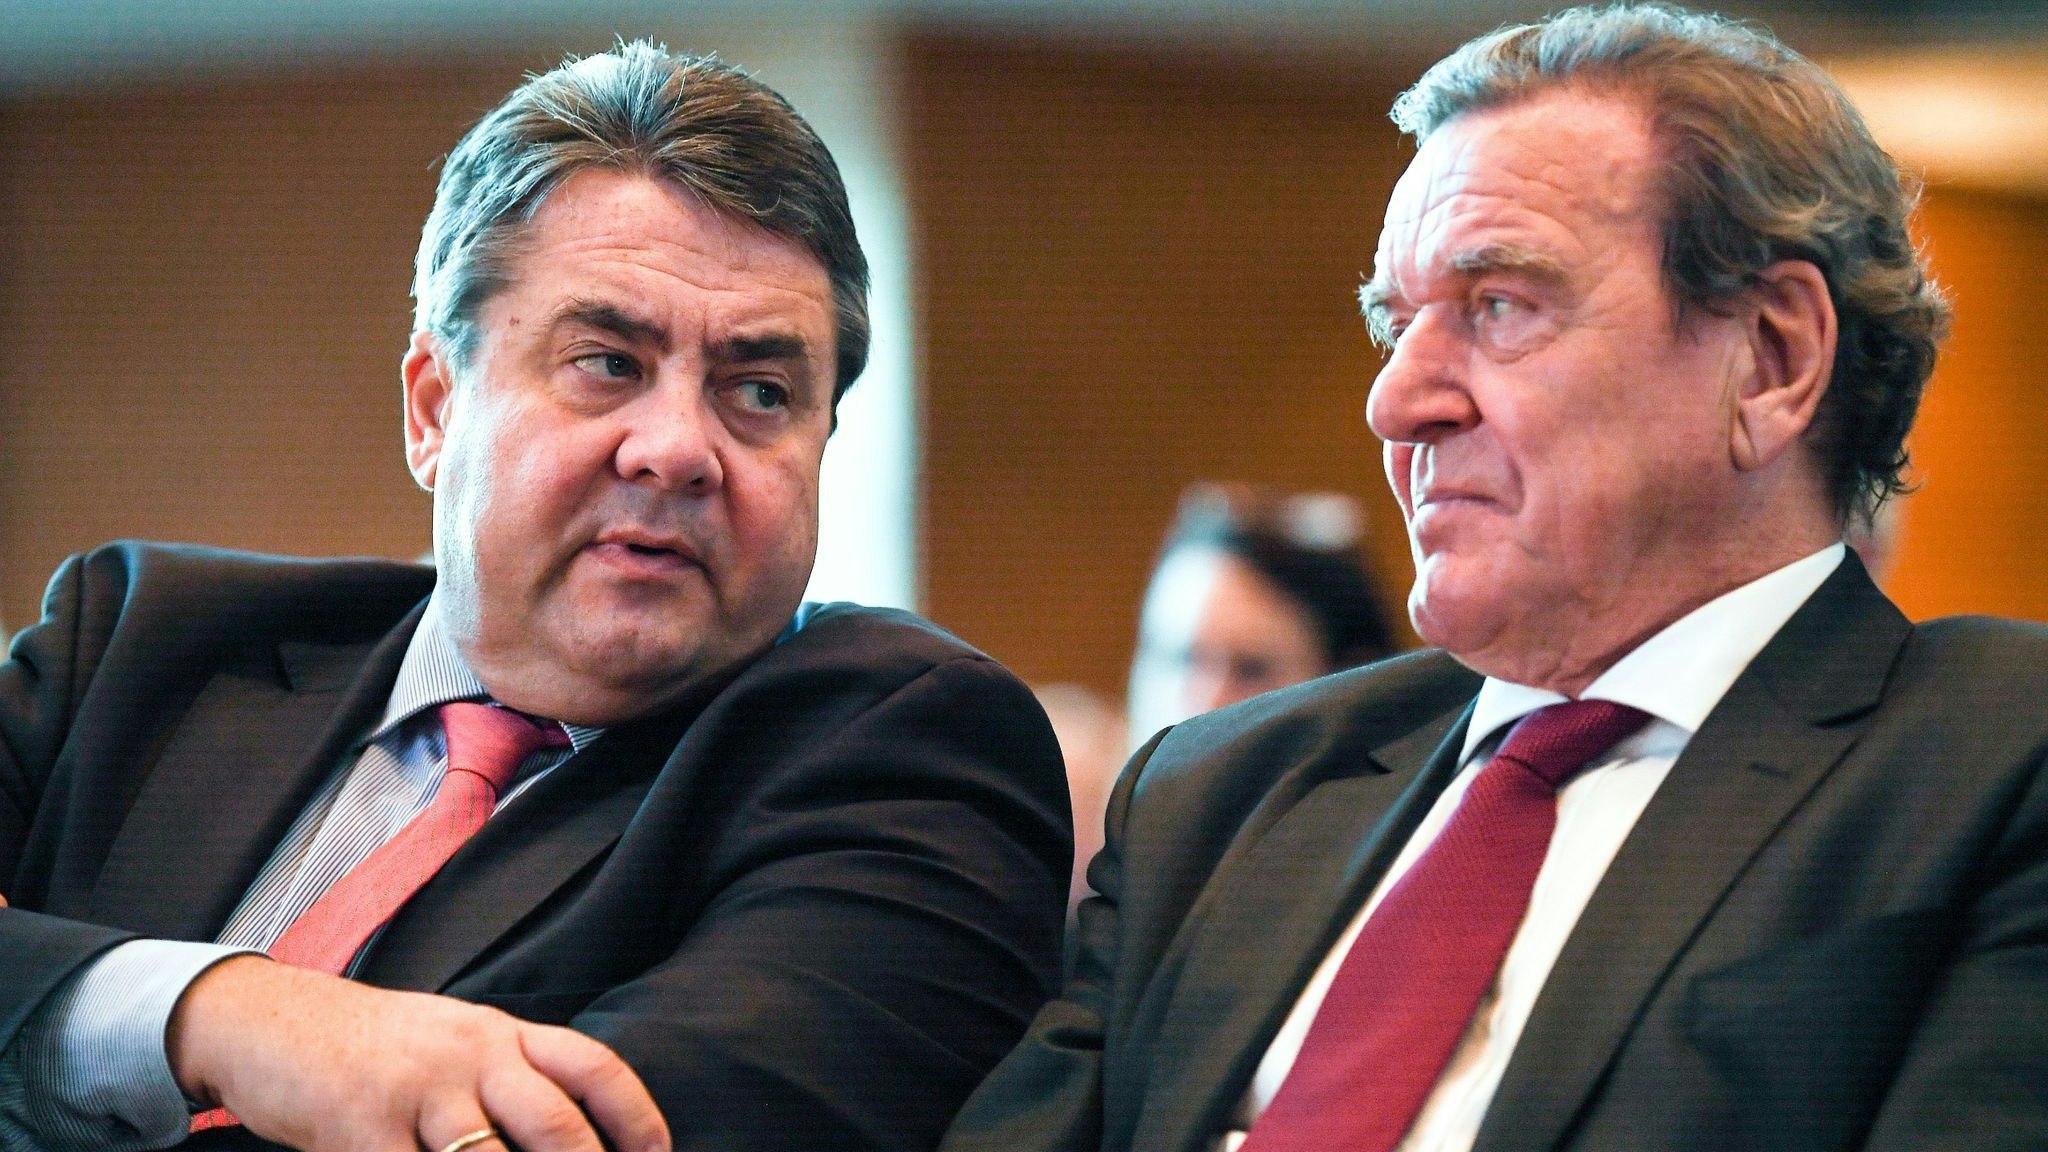 ARCHIV - Sigmar Gabriel (SPD, l) und Gerhard Schröder (SPD) blicken sich auf einem Industriekongress an. Foto: dpa/Gambarini